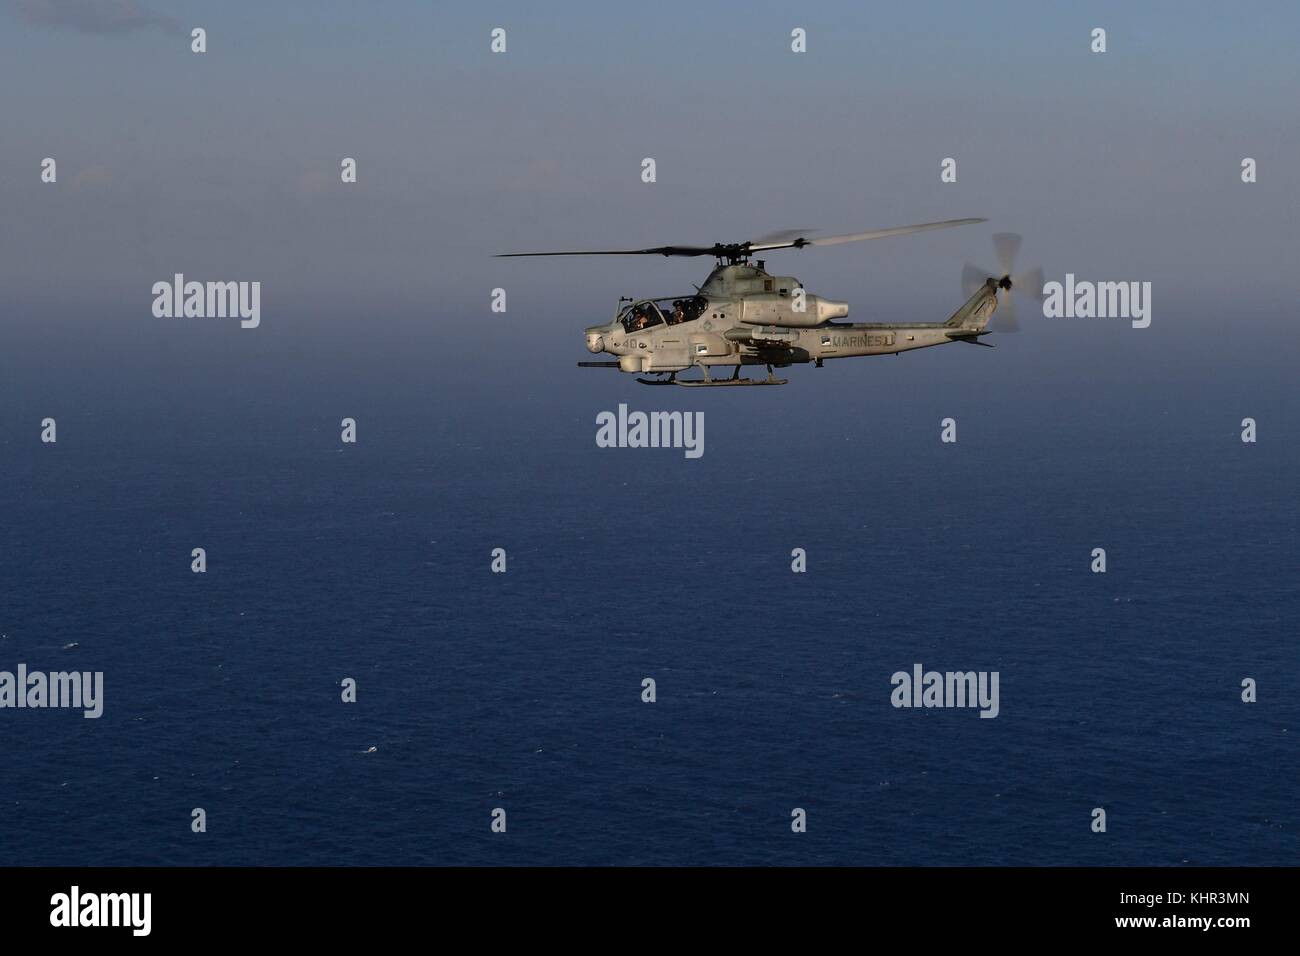 Un US Marine Corps ah-1z viper attacco elicottero sorvola la marina degli Stati Uniti san antonio-classe di trasporto anfibio dock nave USS San Diego il 28 ottobre 2017 nel mar Mediterraneo. (Foto di Justin a. schoenberger via planetpix) Foto Stock